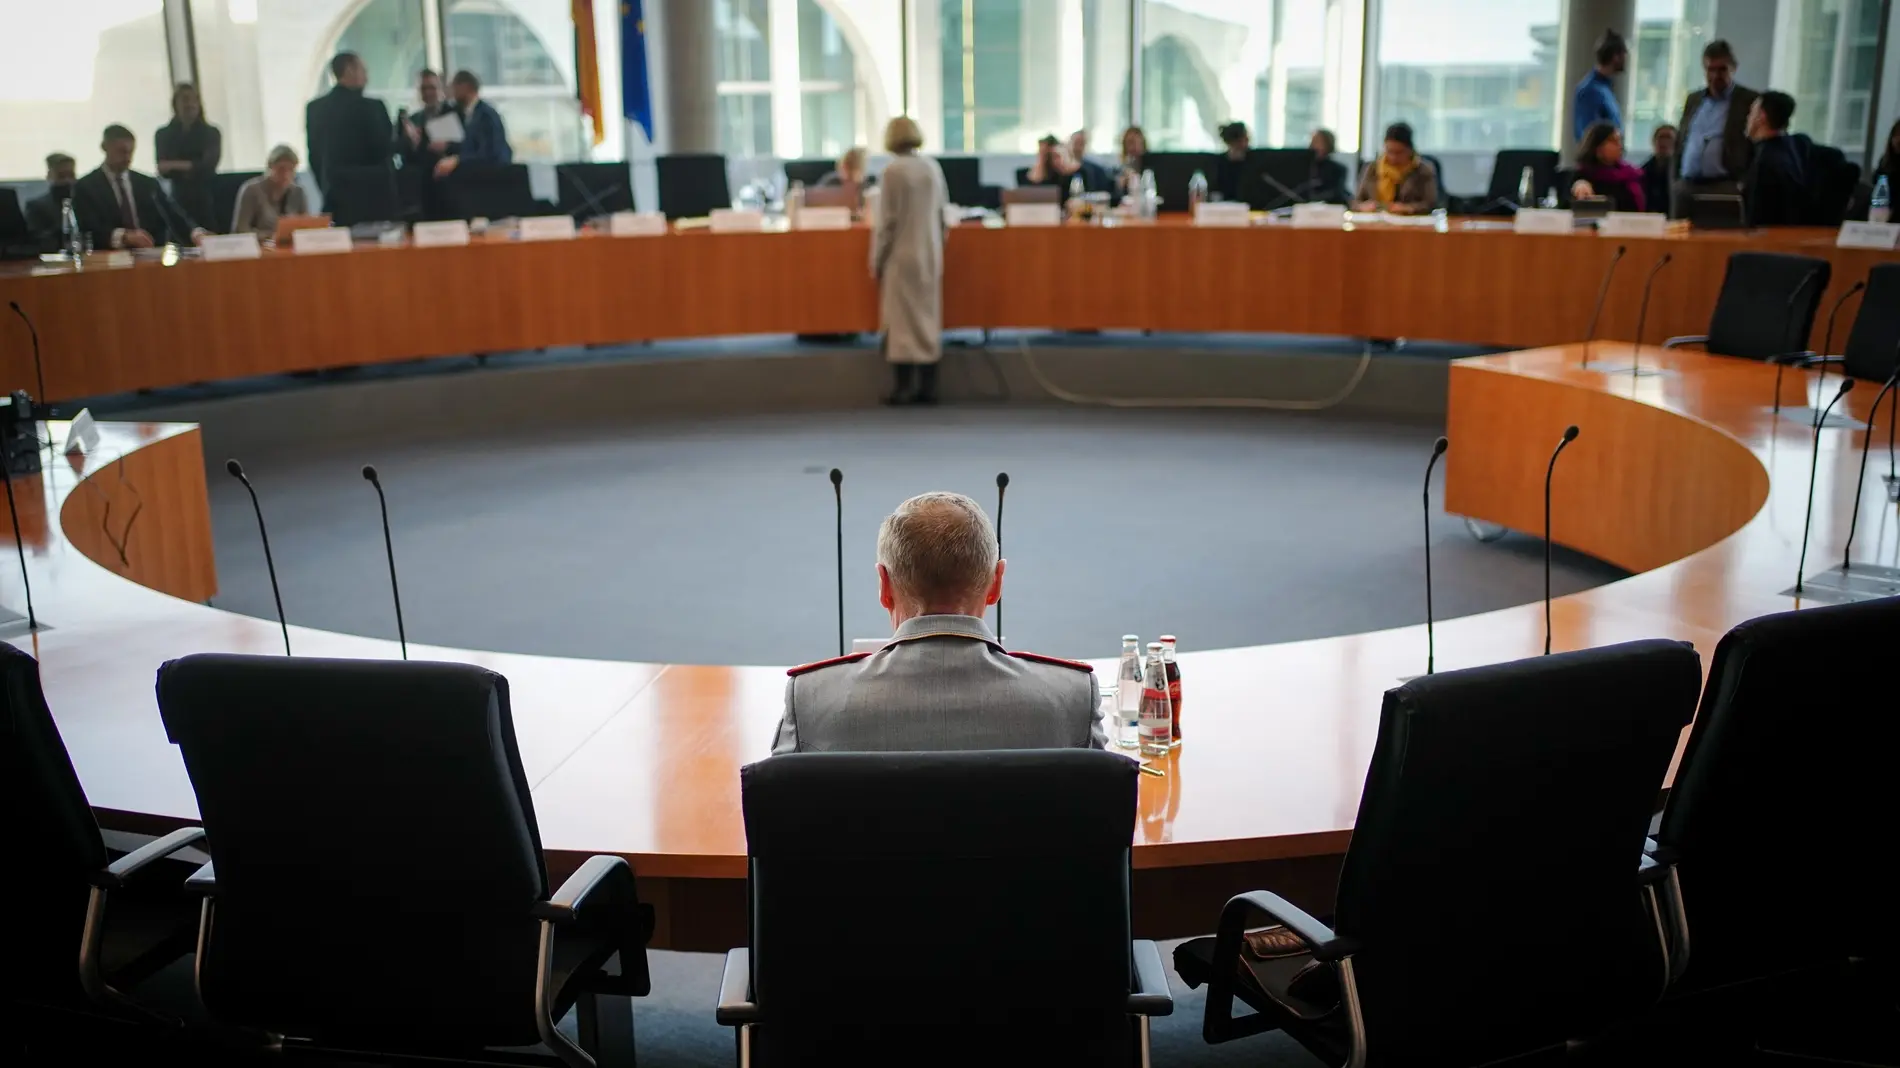 Mann in Uniform sitzt im Untersuchungsausschuss-Saal